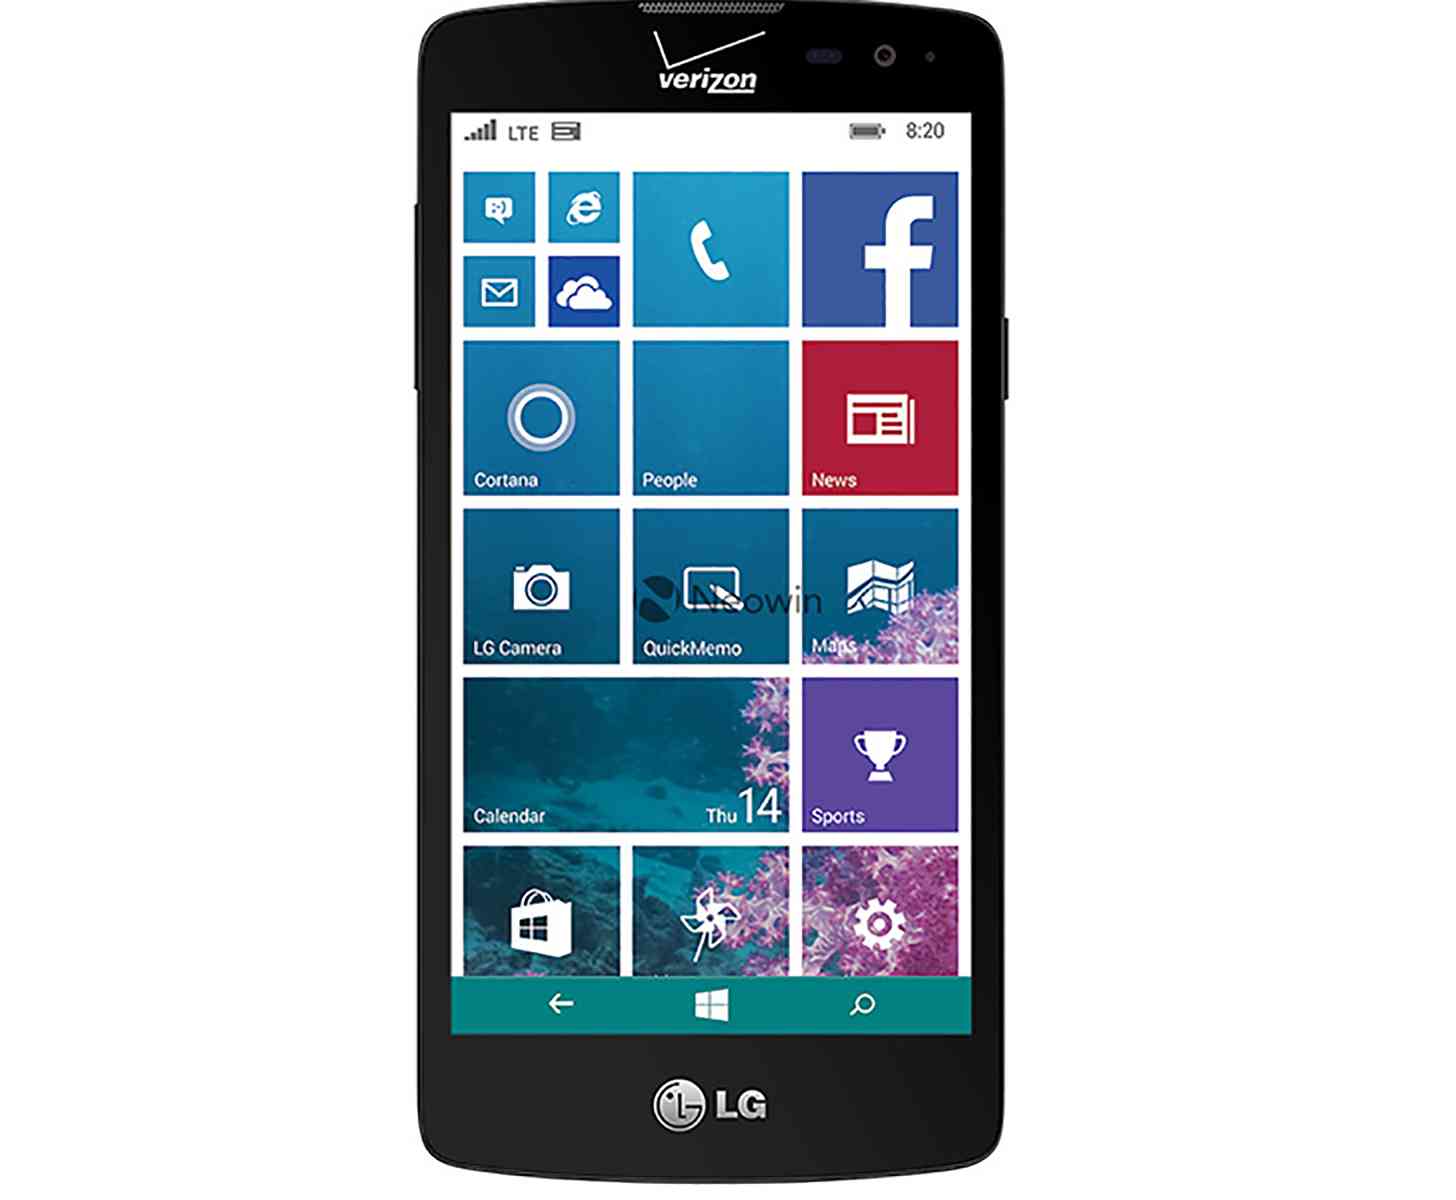 LG Windows Phone Verizon leaked image